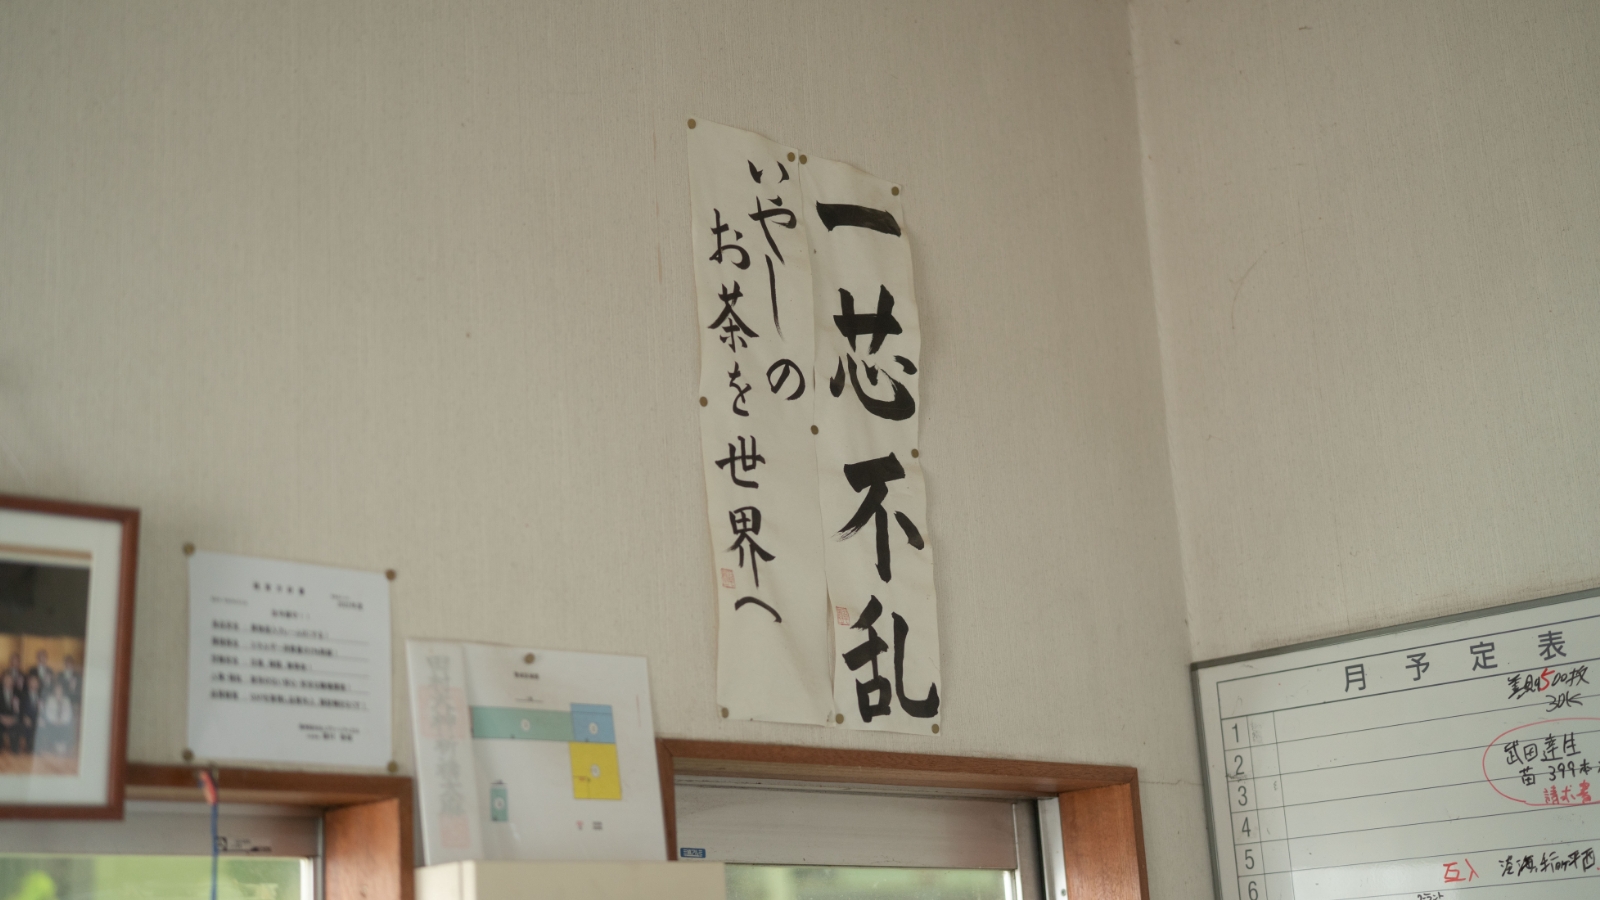 工場内にかかげている習字で書かれた「いやしのお茶を世界へ」という言葉の写真